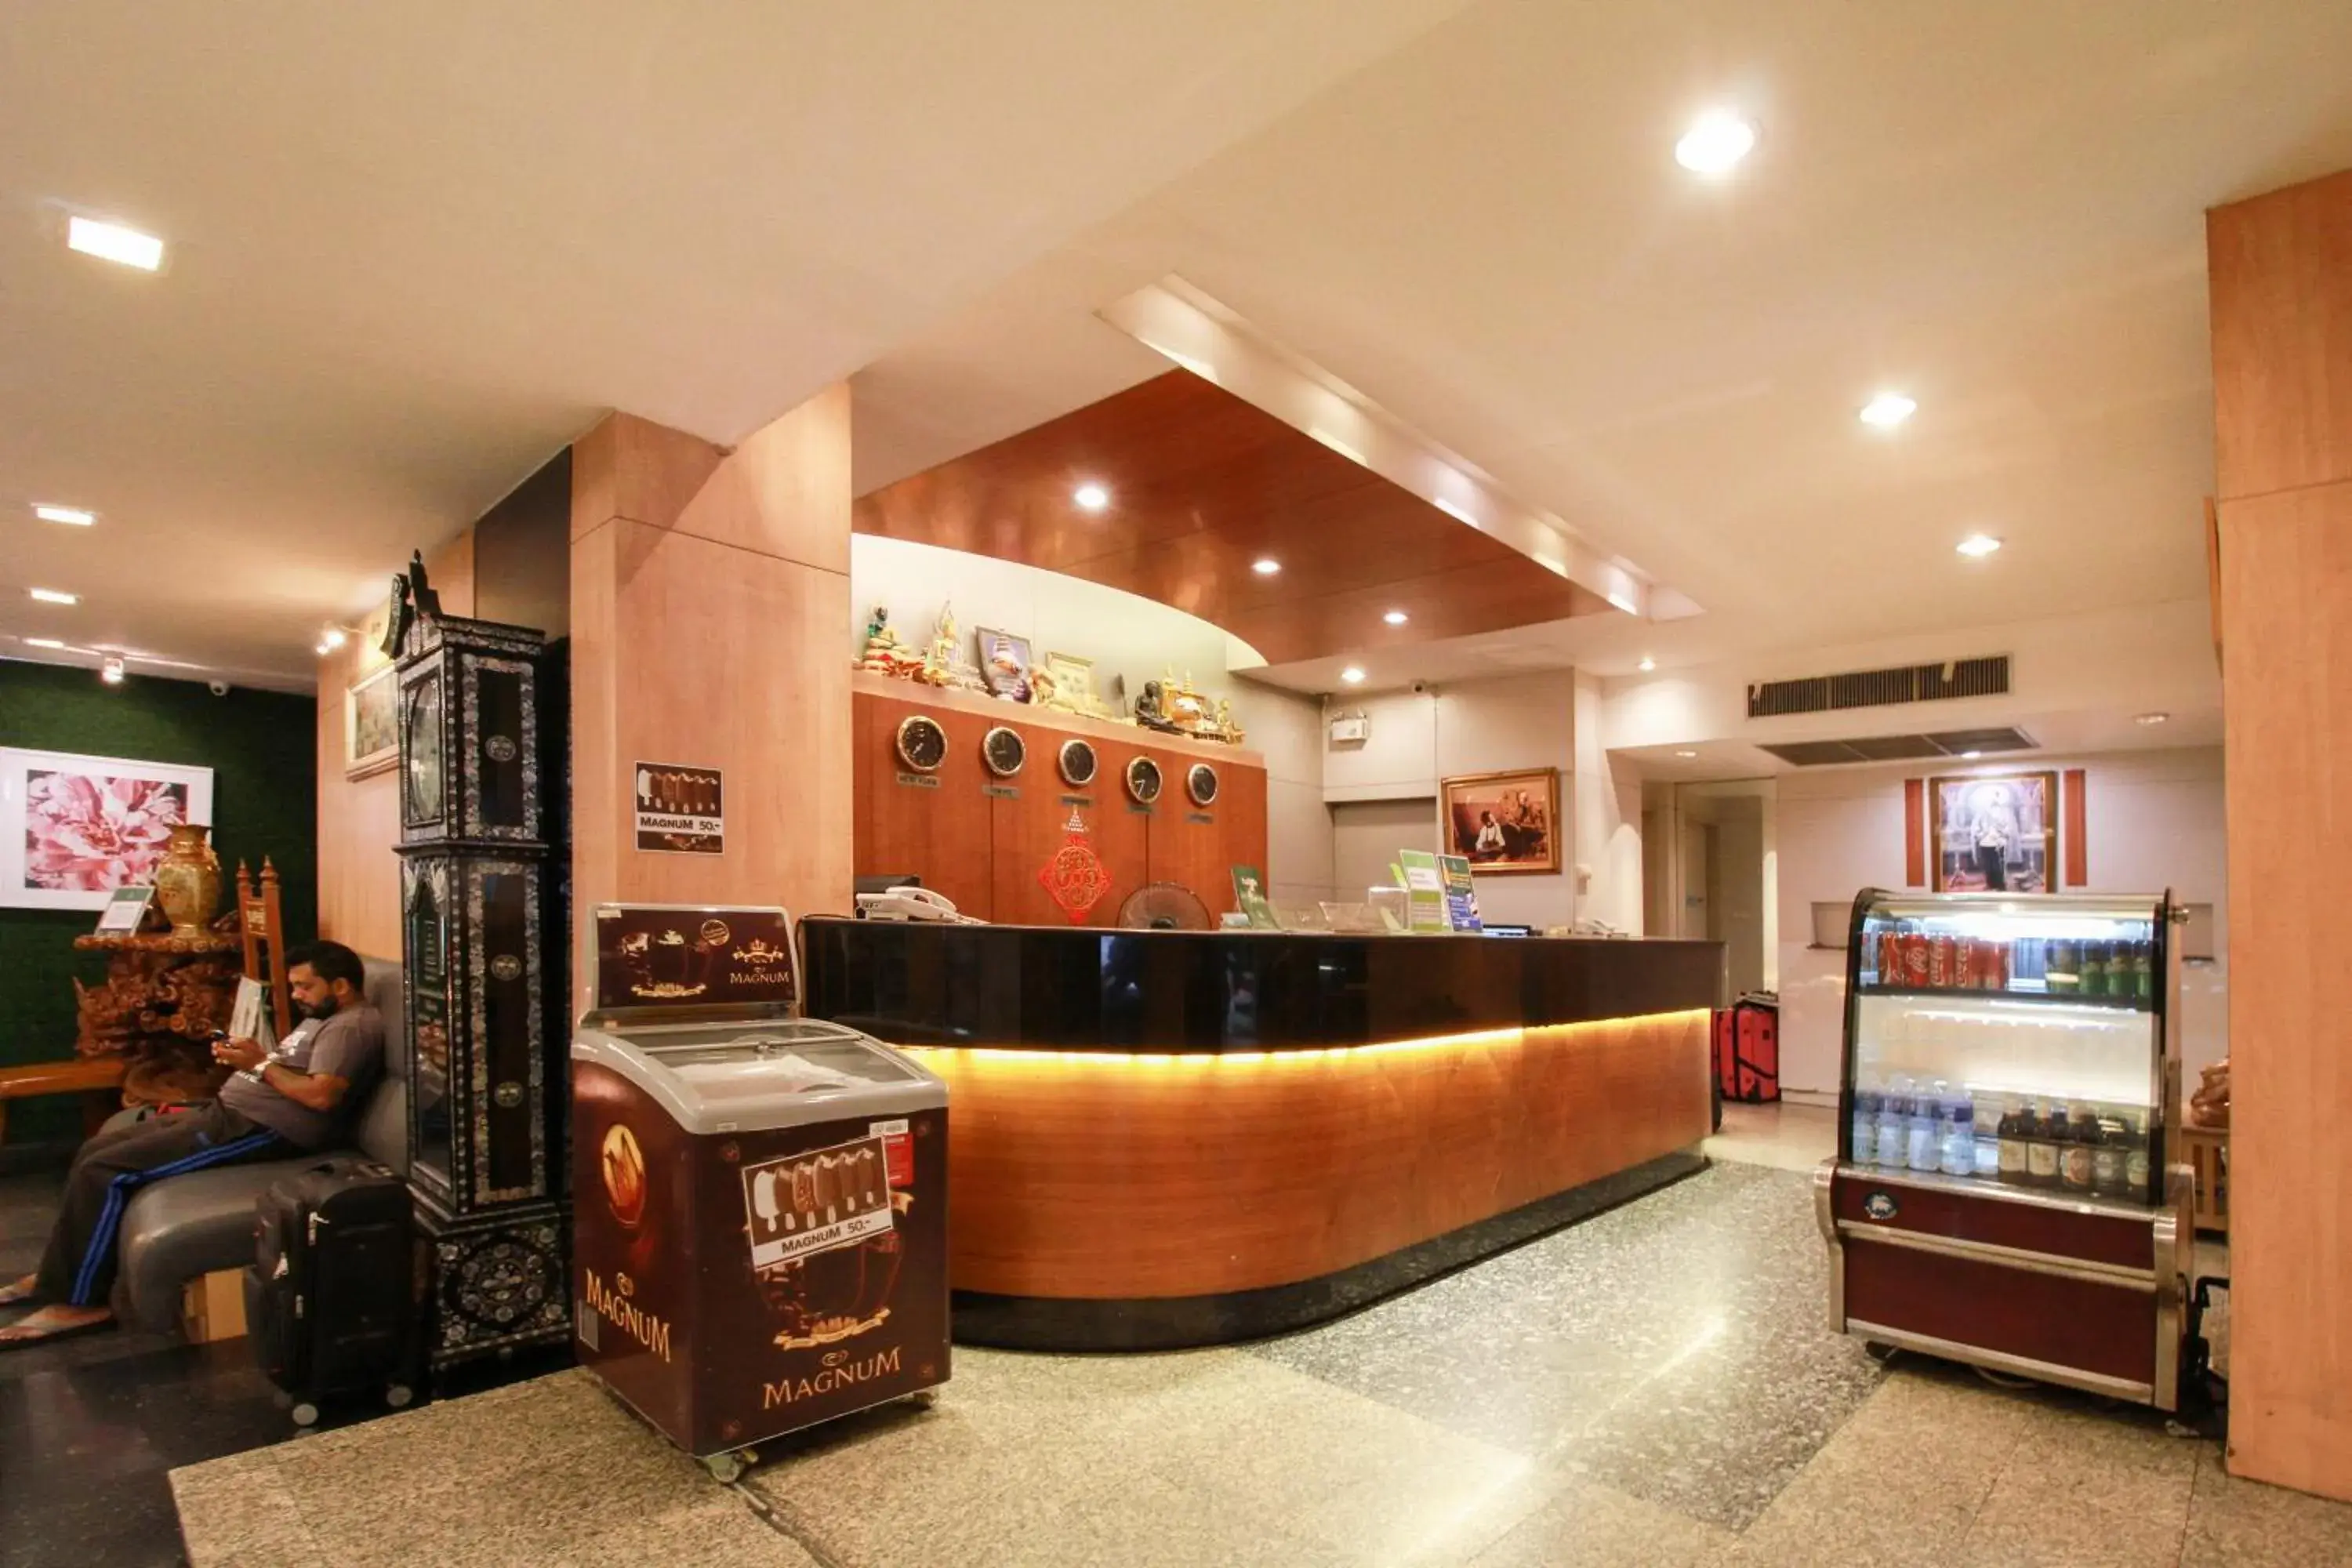 Lobby or reception, Lobby/Reception in Ten Stars Hotel Pratunam